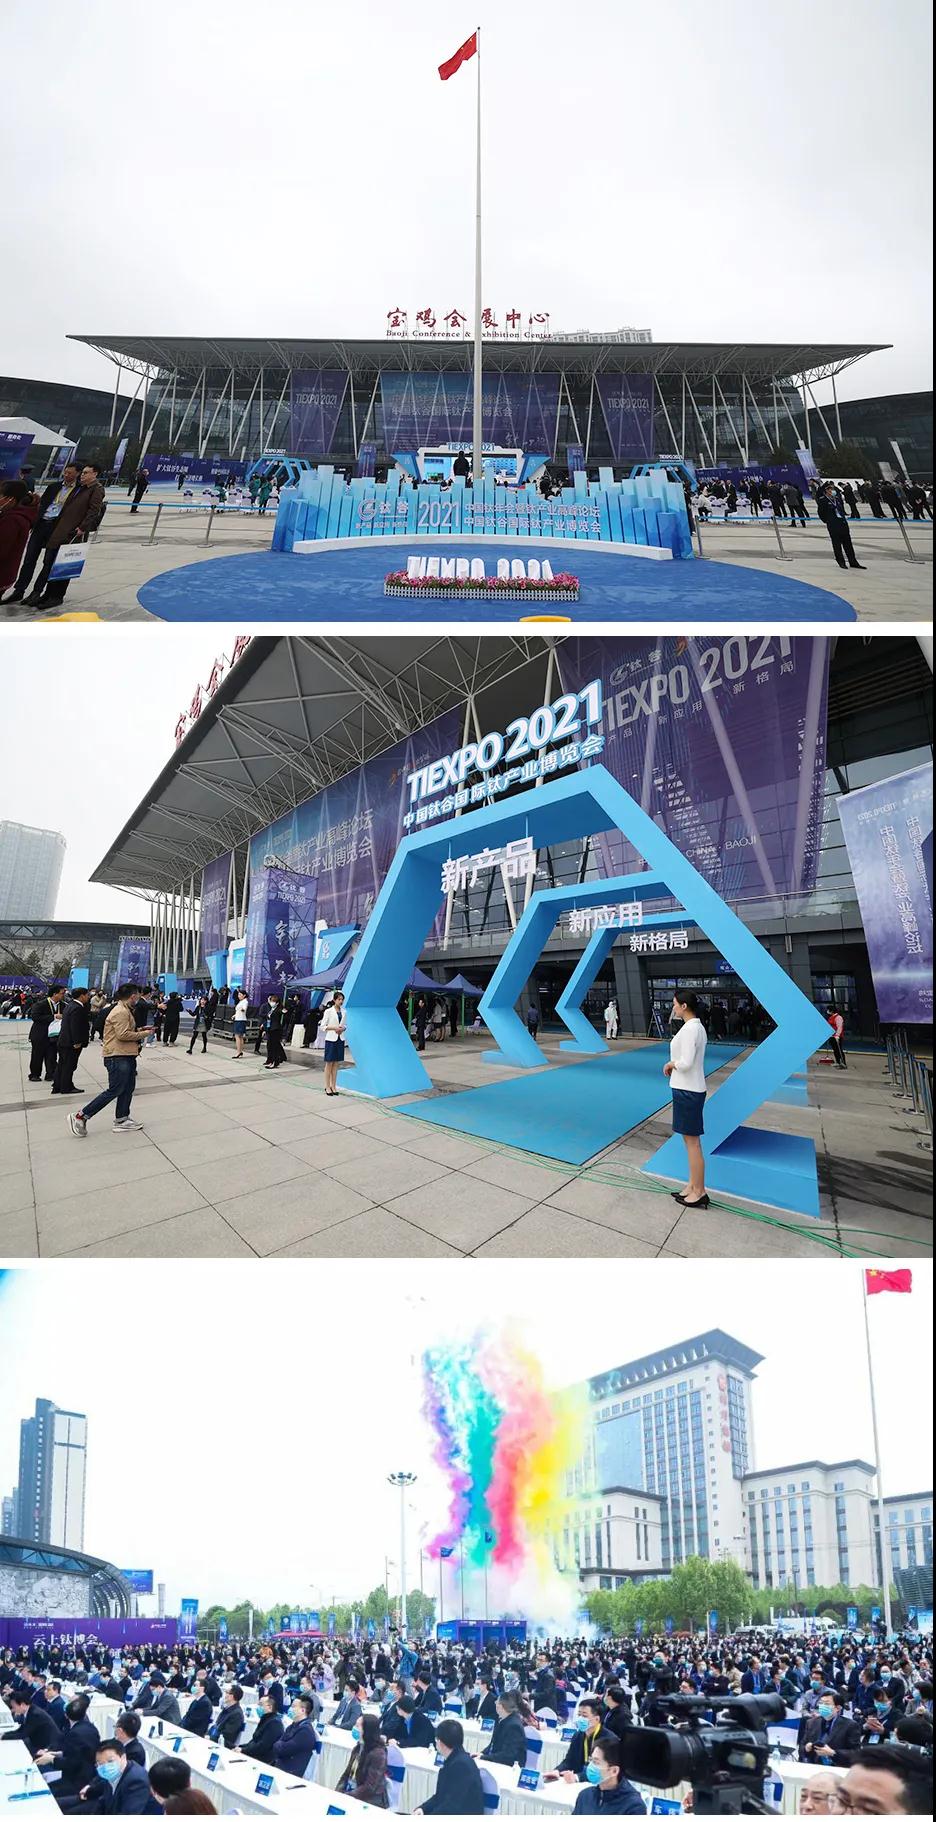 2021年（第四届）中国钛谷国际钛产业博览会圆满结束，金海源感谢各界朋友的关注与支持！